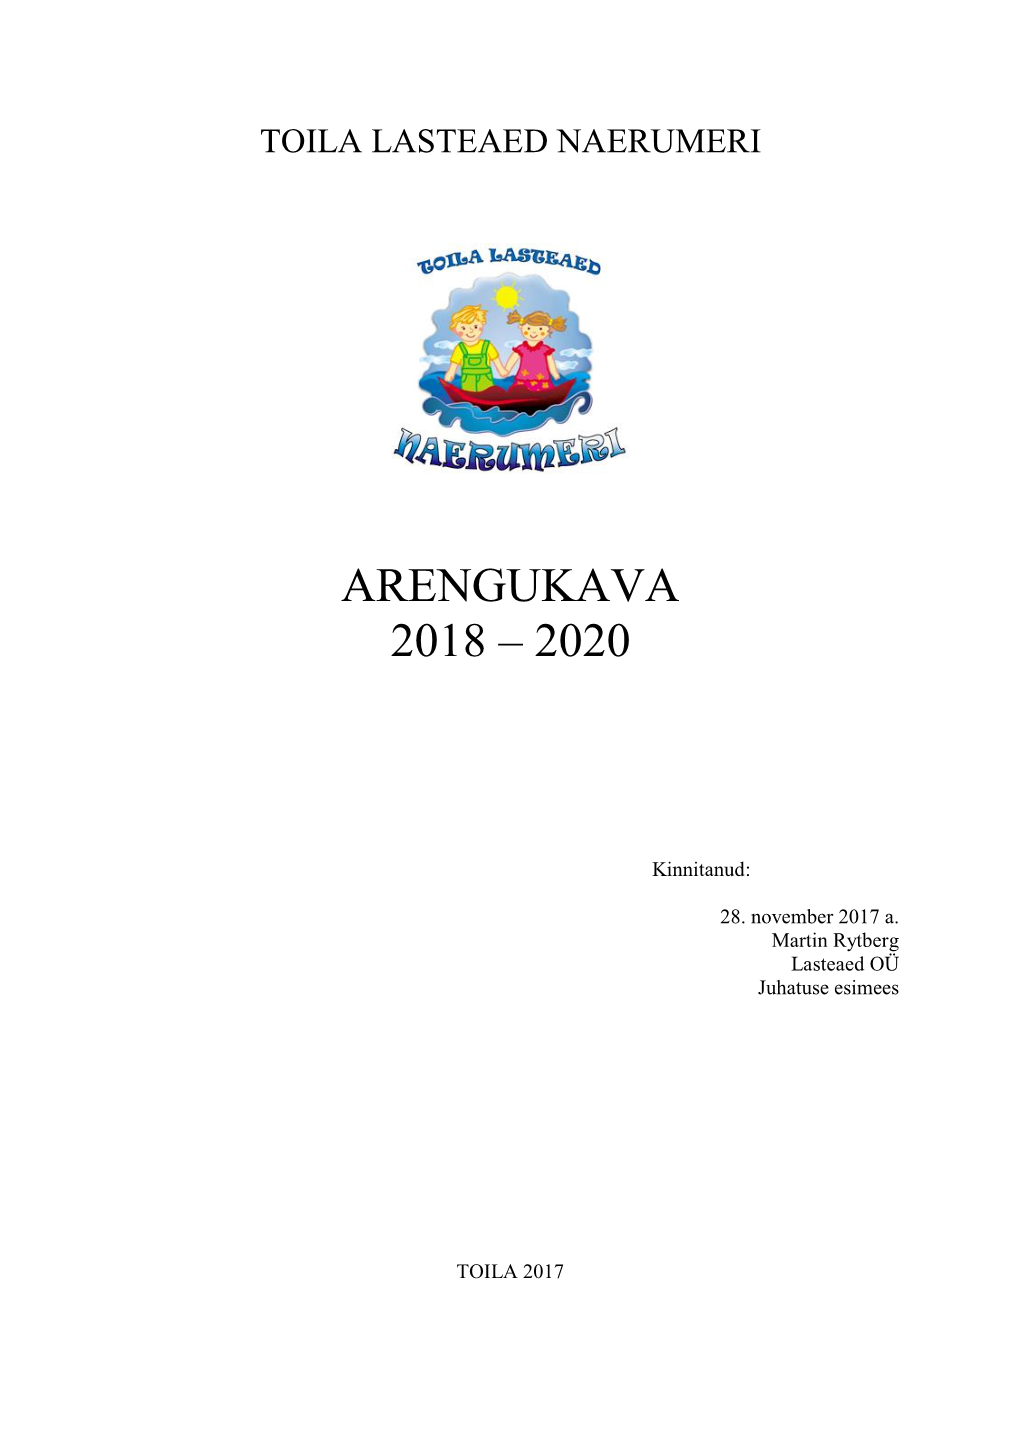 Toila Lasteaed Naerumeri ARENGUKAVA 2018-2020